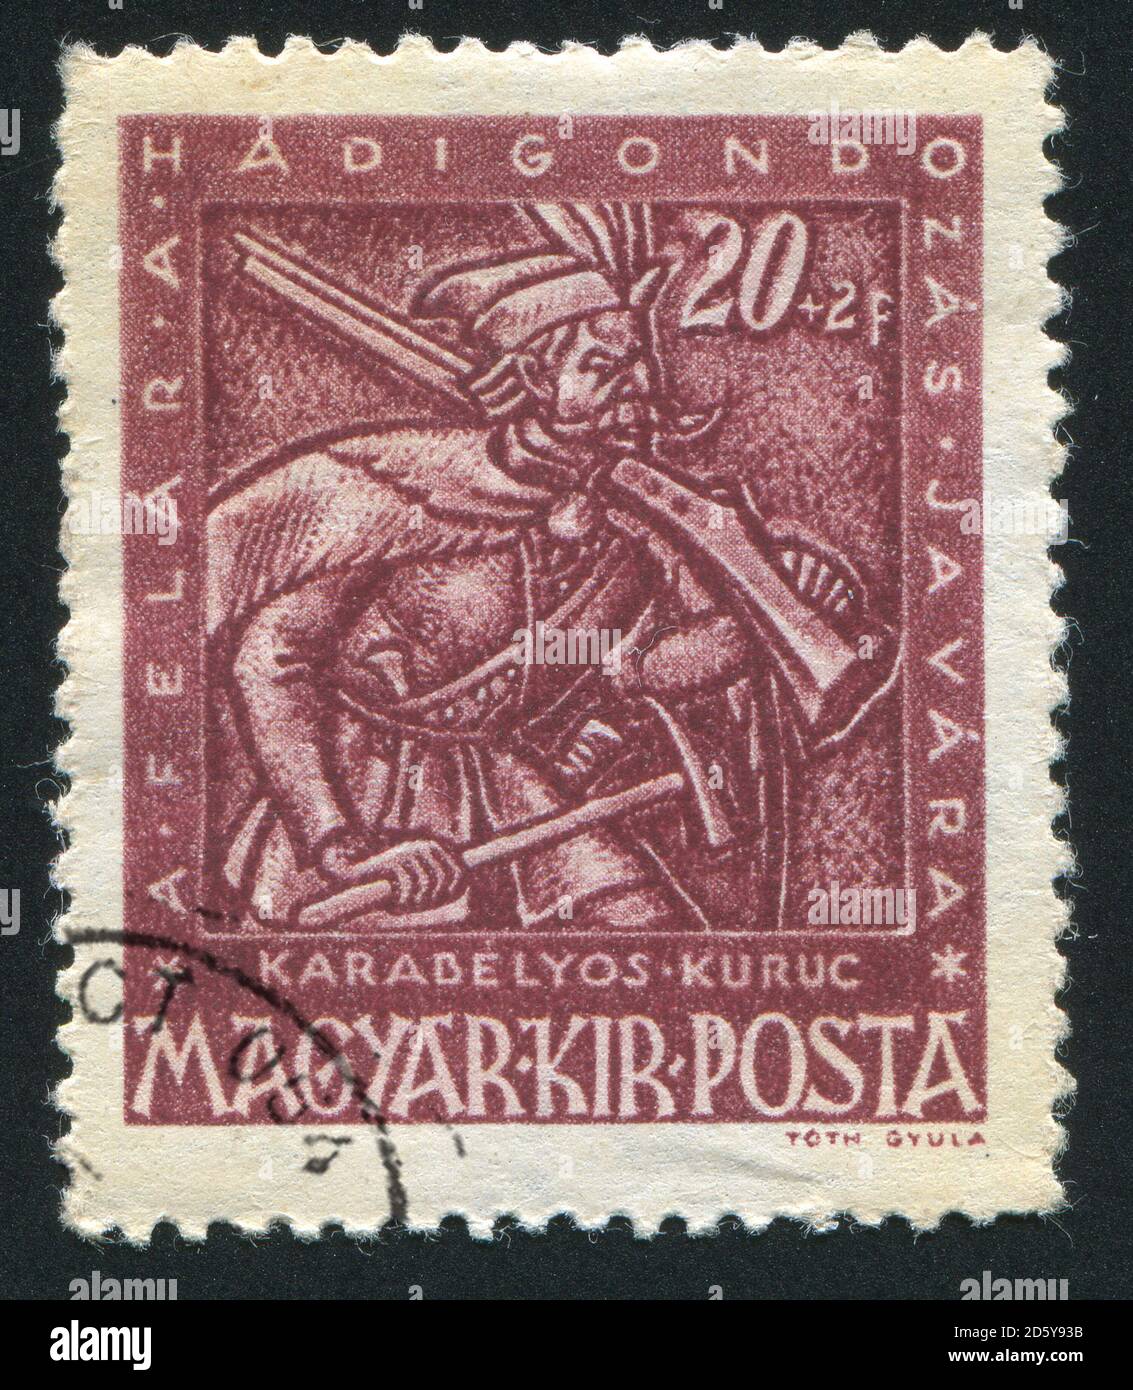 UNGARN - UM 1943: Briefmarke gedruckt von Ungarn, zeigt Musketier, um 1943 Stockfoto